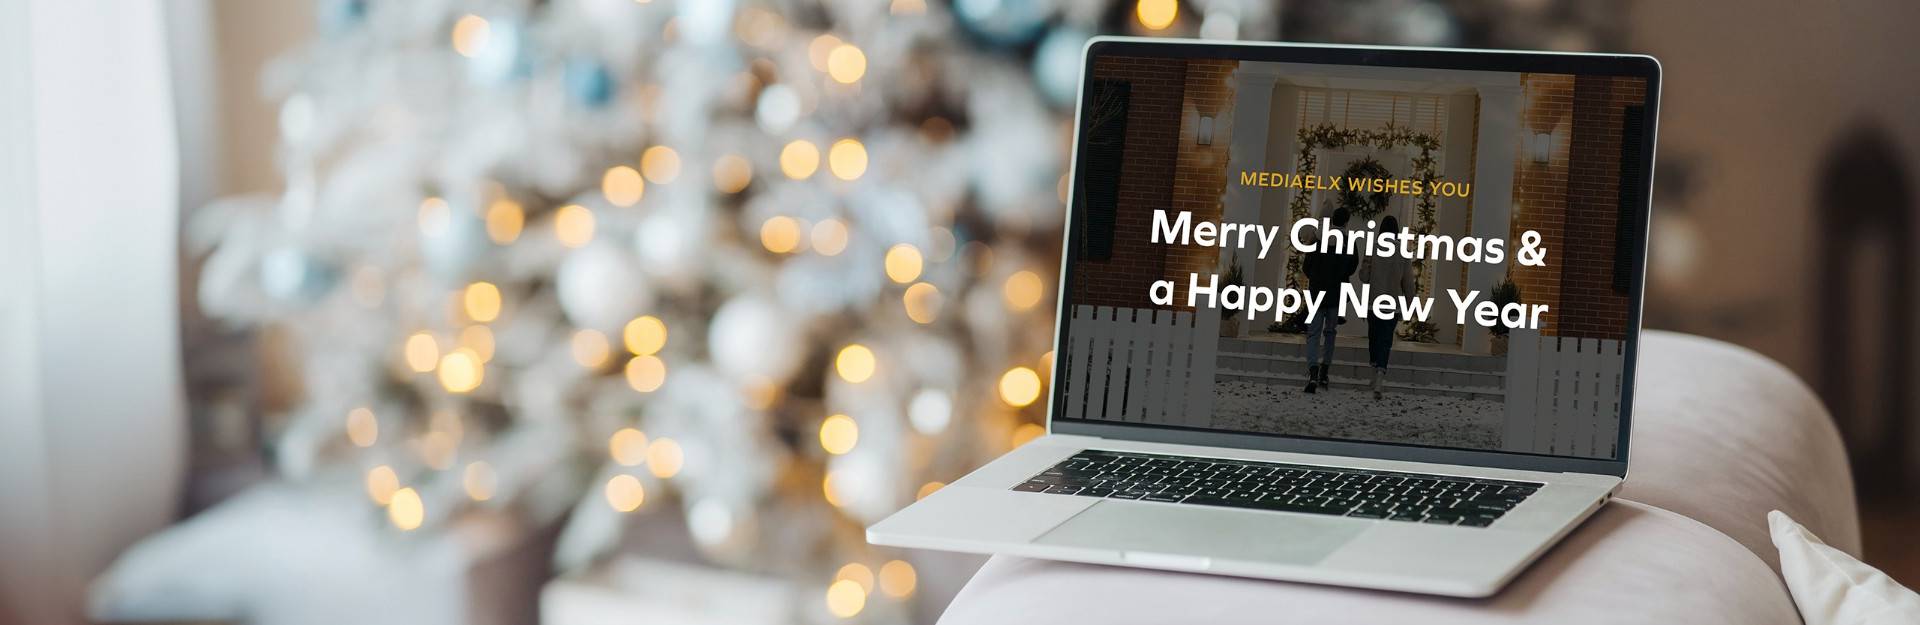 Team Mediaelx wenst jullie fijne feestdagen